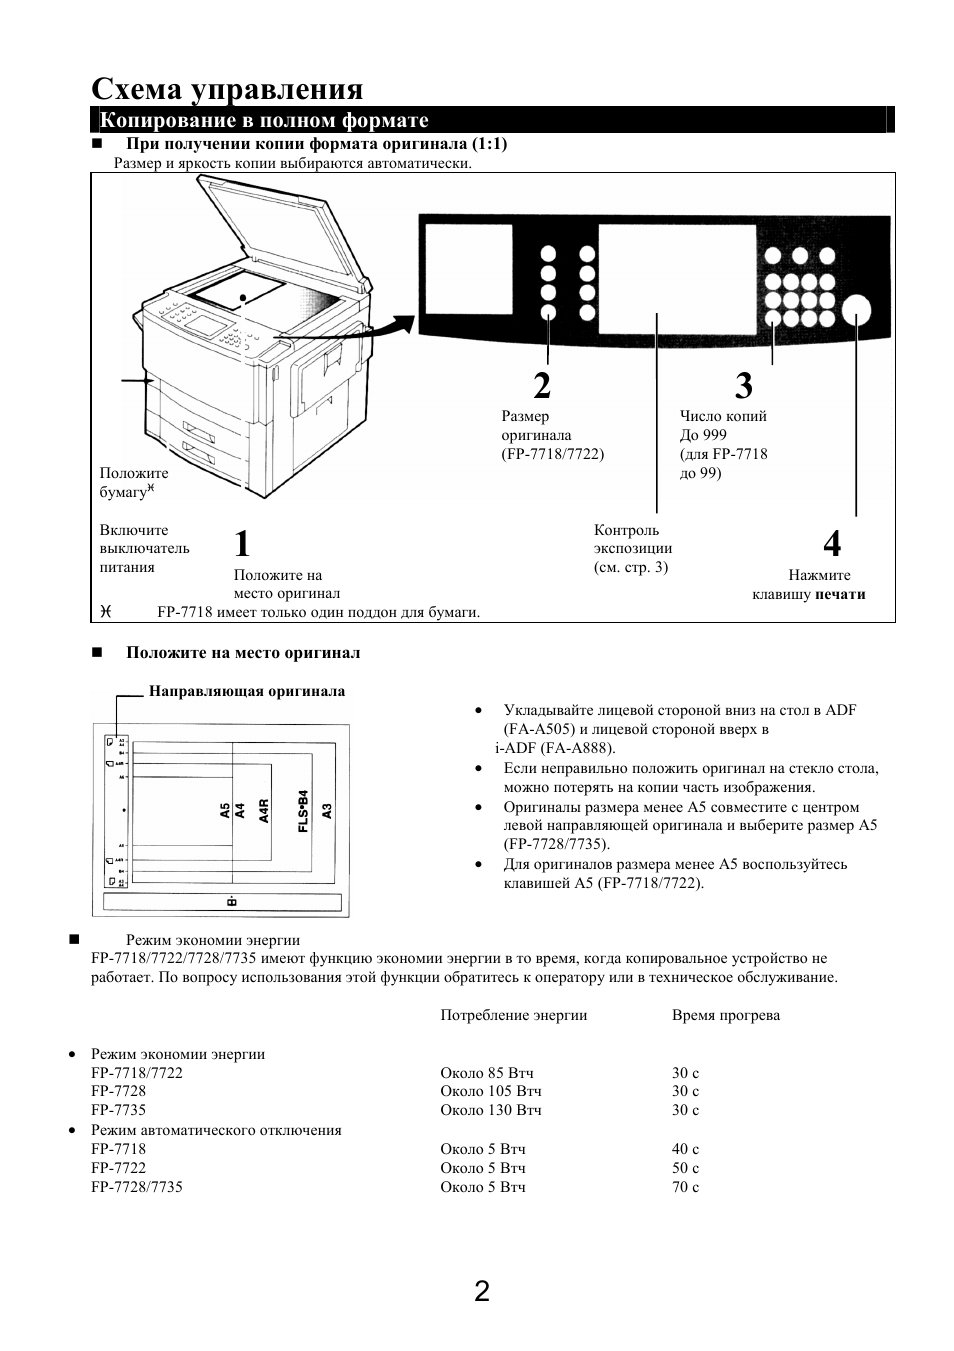 Схема управления, Копирование в полном формате | Инструкция по эксплуатации Panasonic FP-7718 | Страница 2 / 59